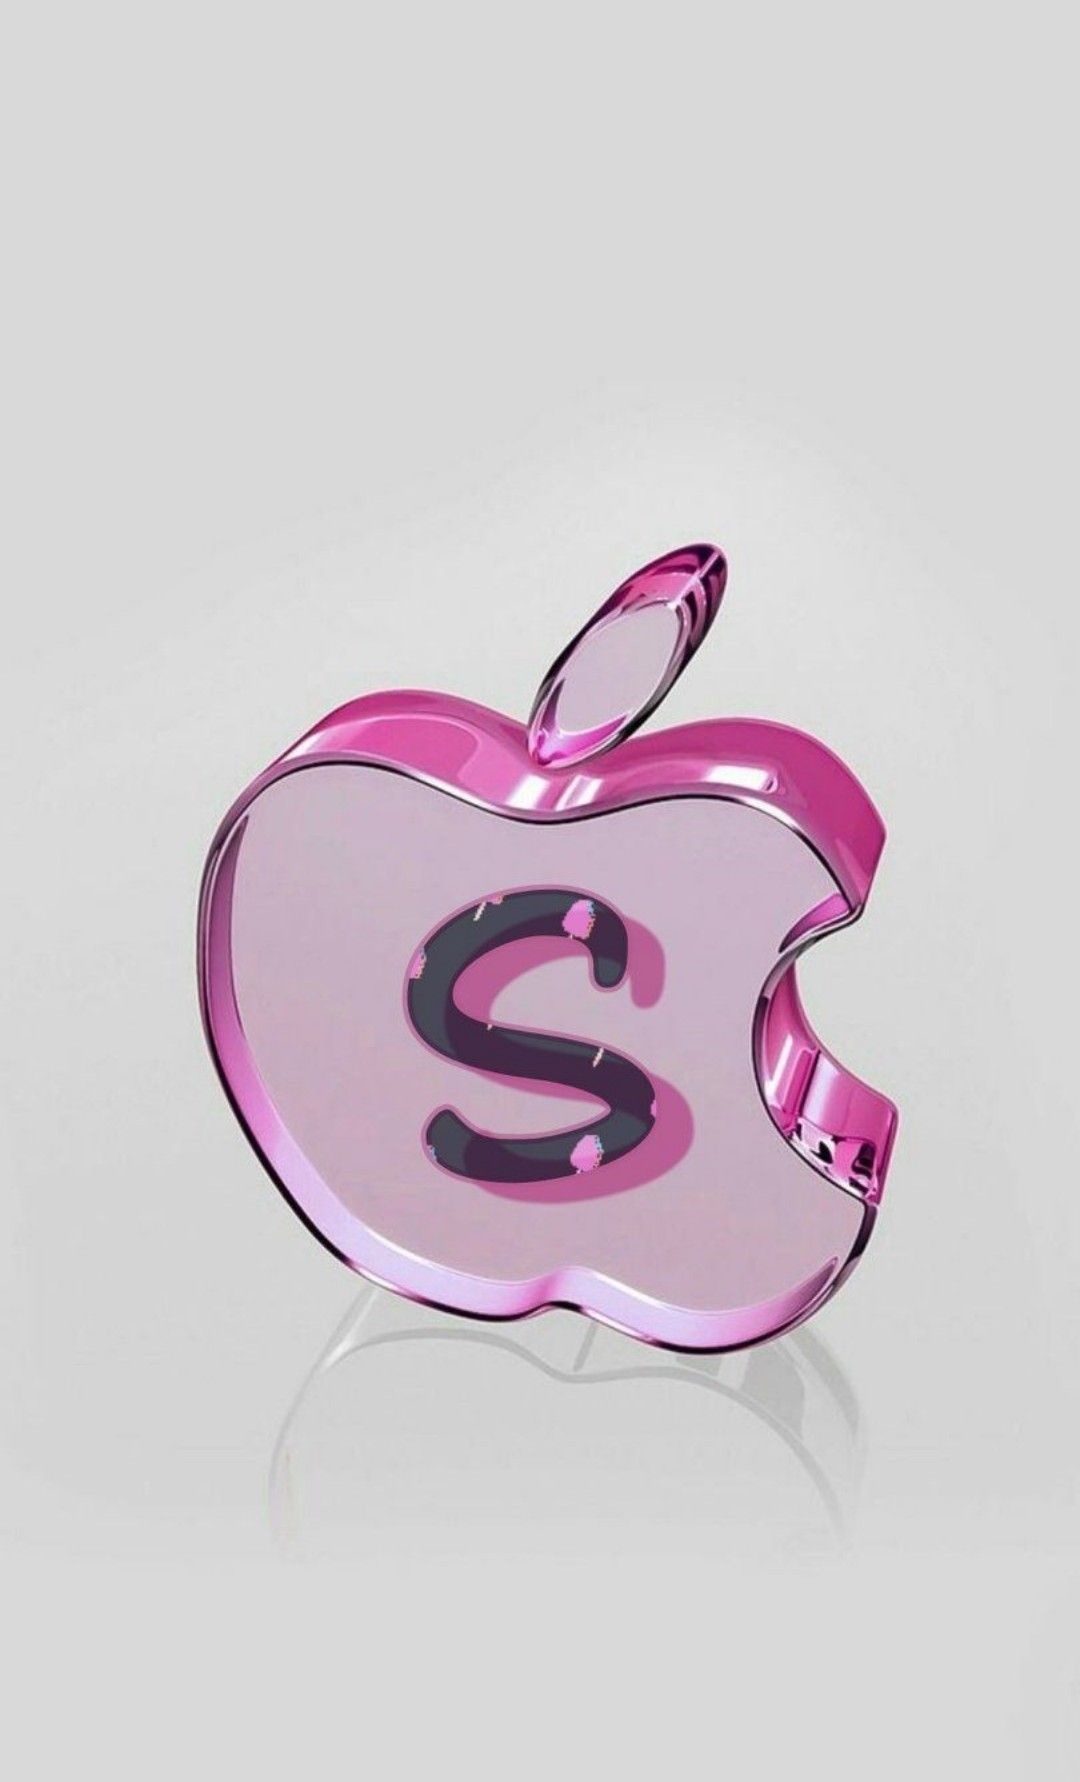 S Letter - Apple